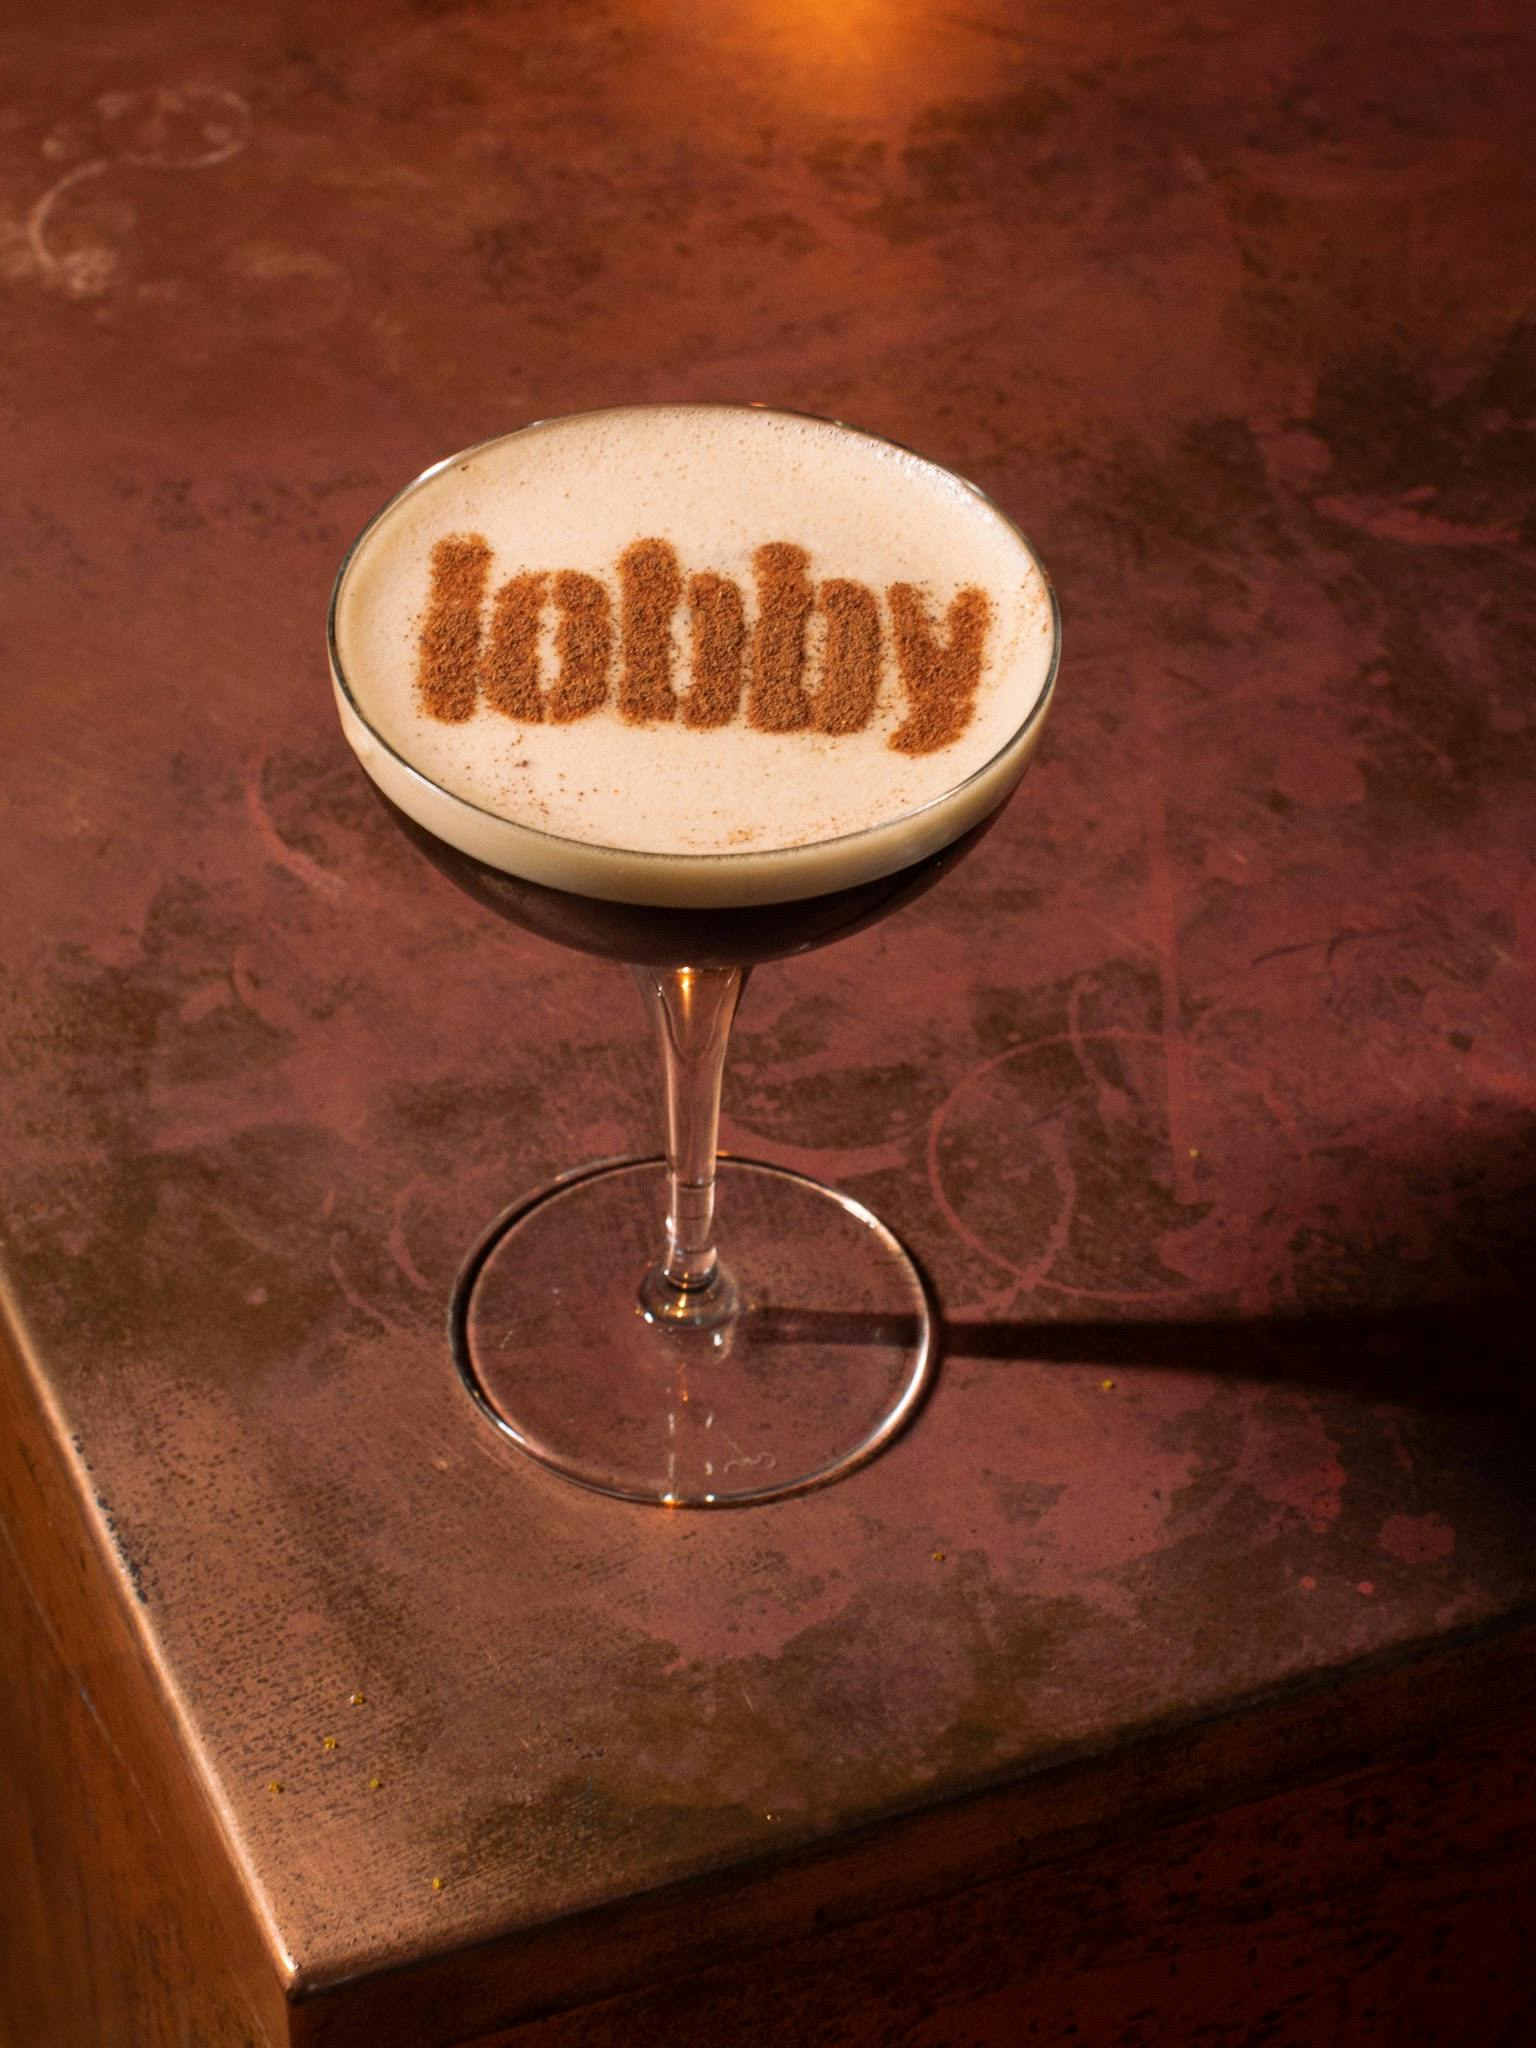 The Lobby Espresso Martini